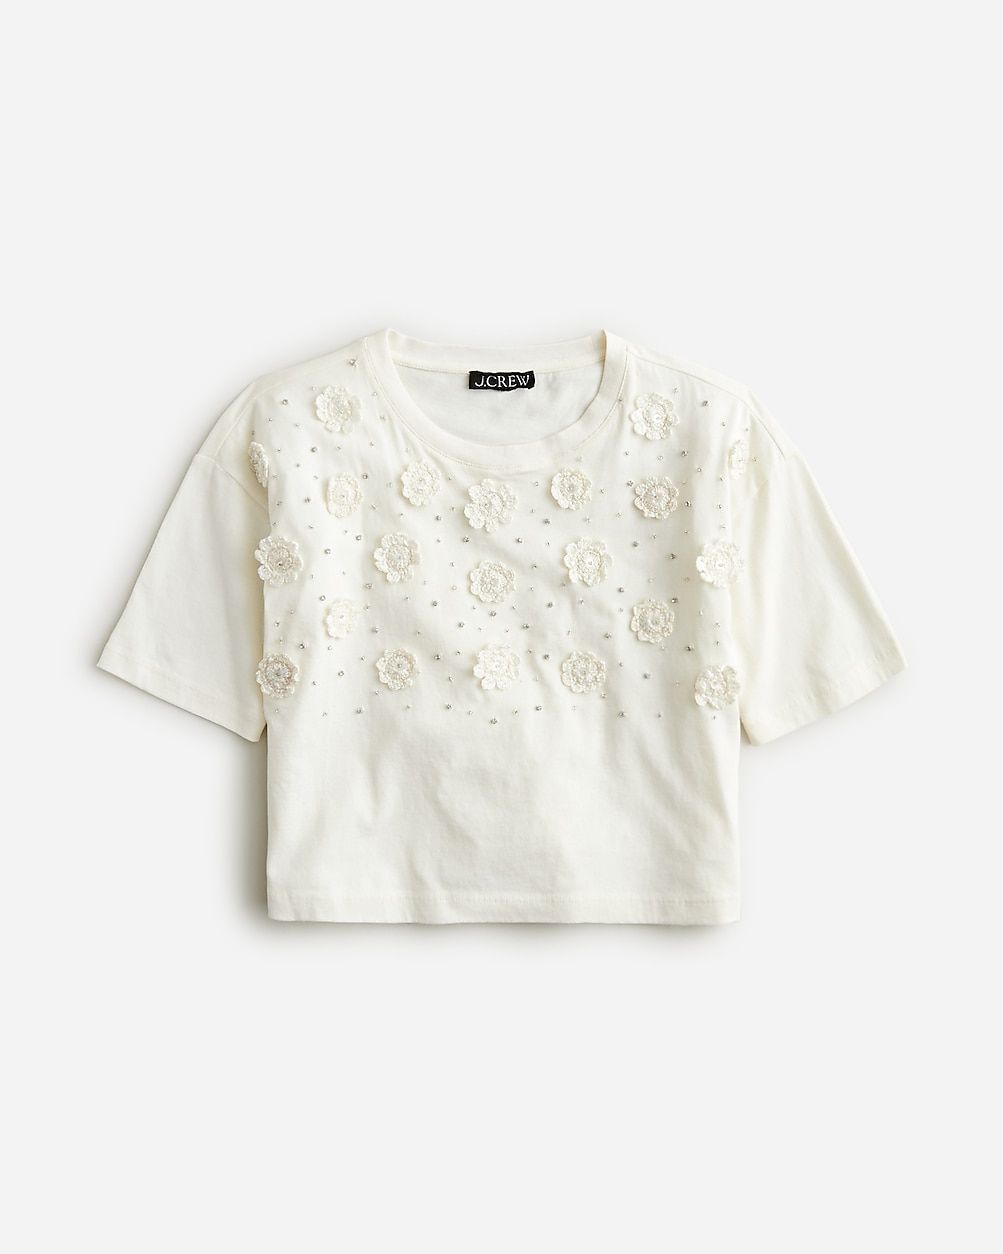 Cropped T-shirt with crochet floral appliqués | J.Crew US